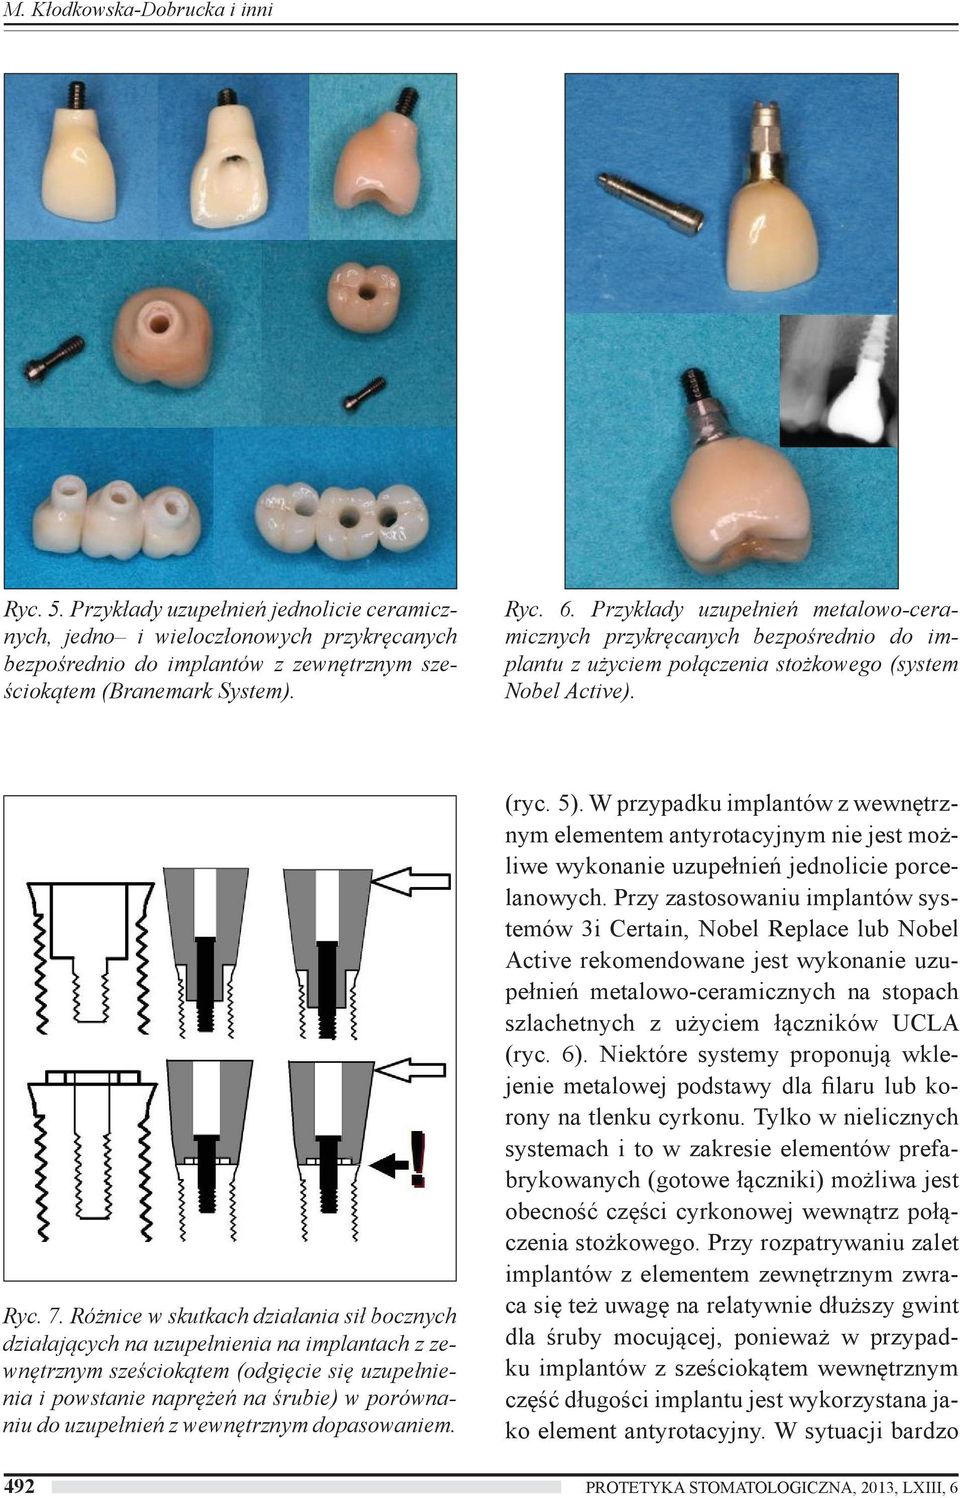 Różnice w skutkach działania sił bocznych działających na uzupełnienia na implantach z zewnętrznym sześciokątem (odgięcie się uzupełnienia i powstanie naprężeń na śrubie) w porównaniu do uzupełnień z